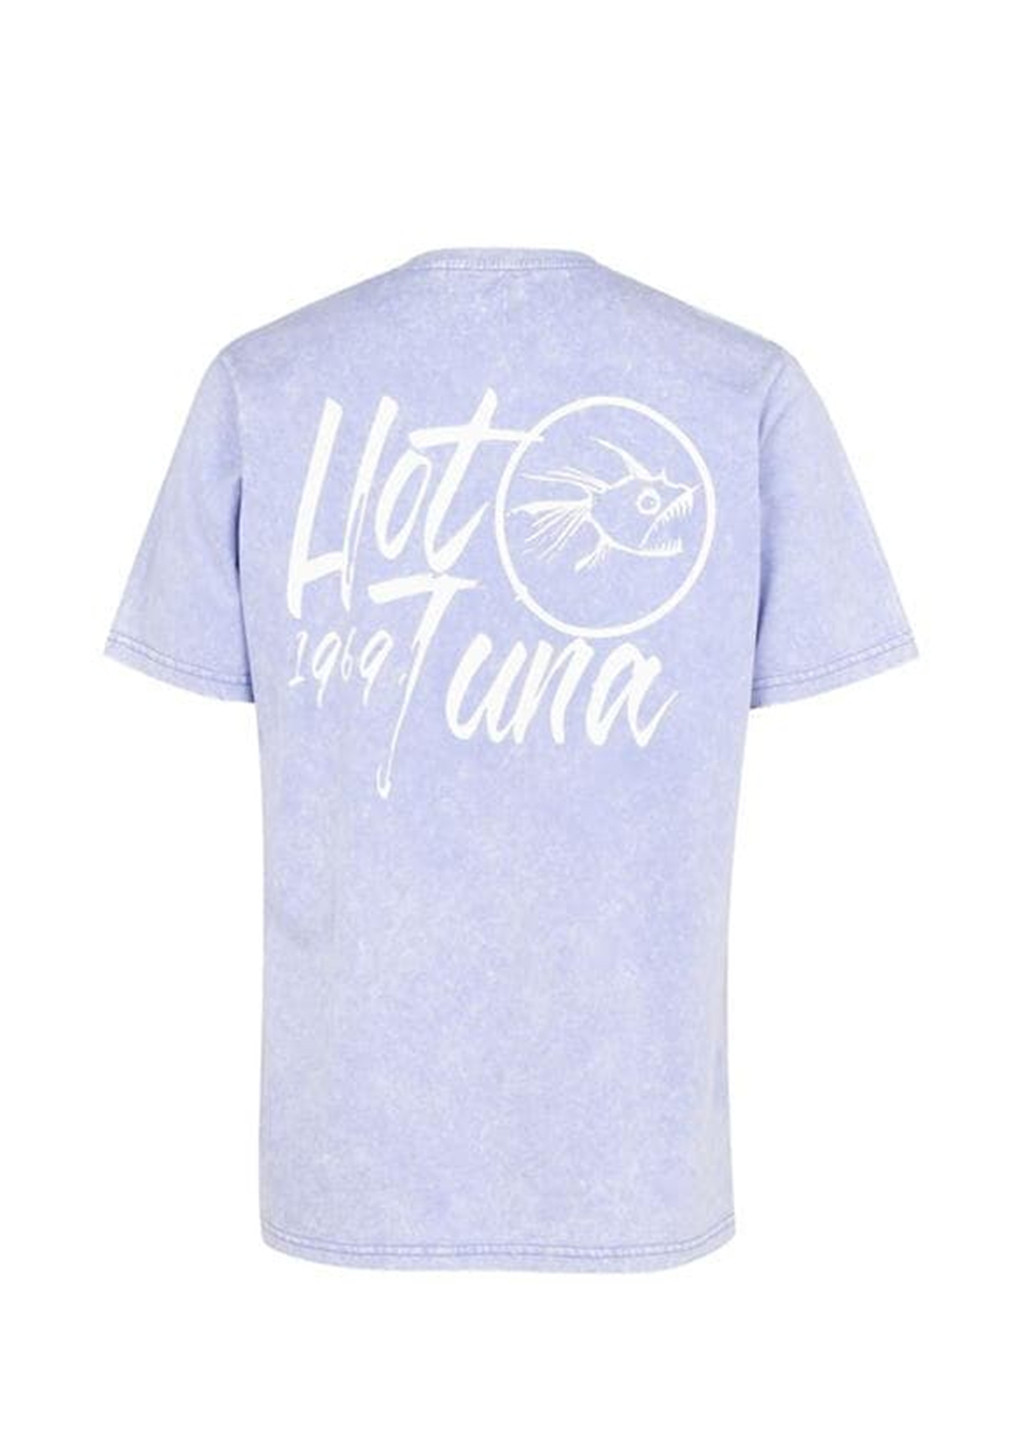 Сиреневая футболка Hot Tuna